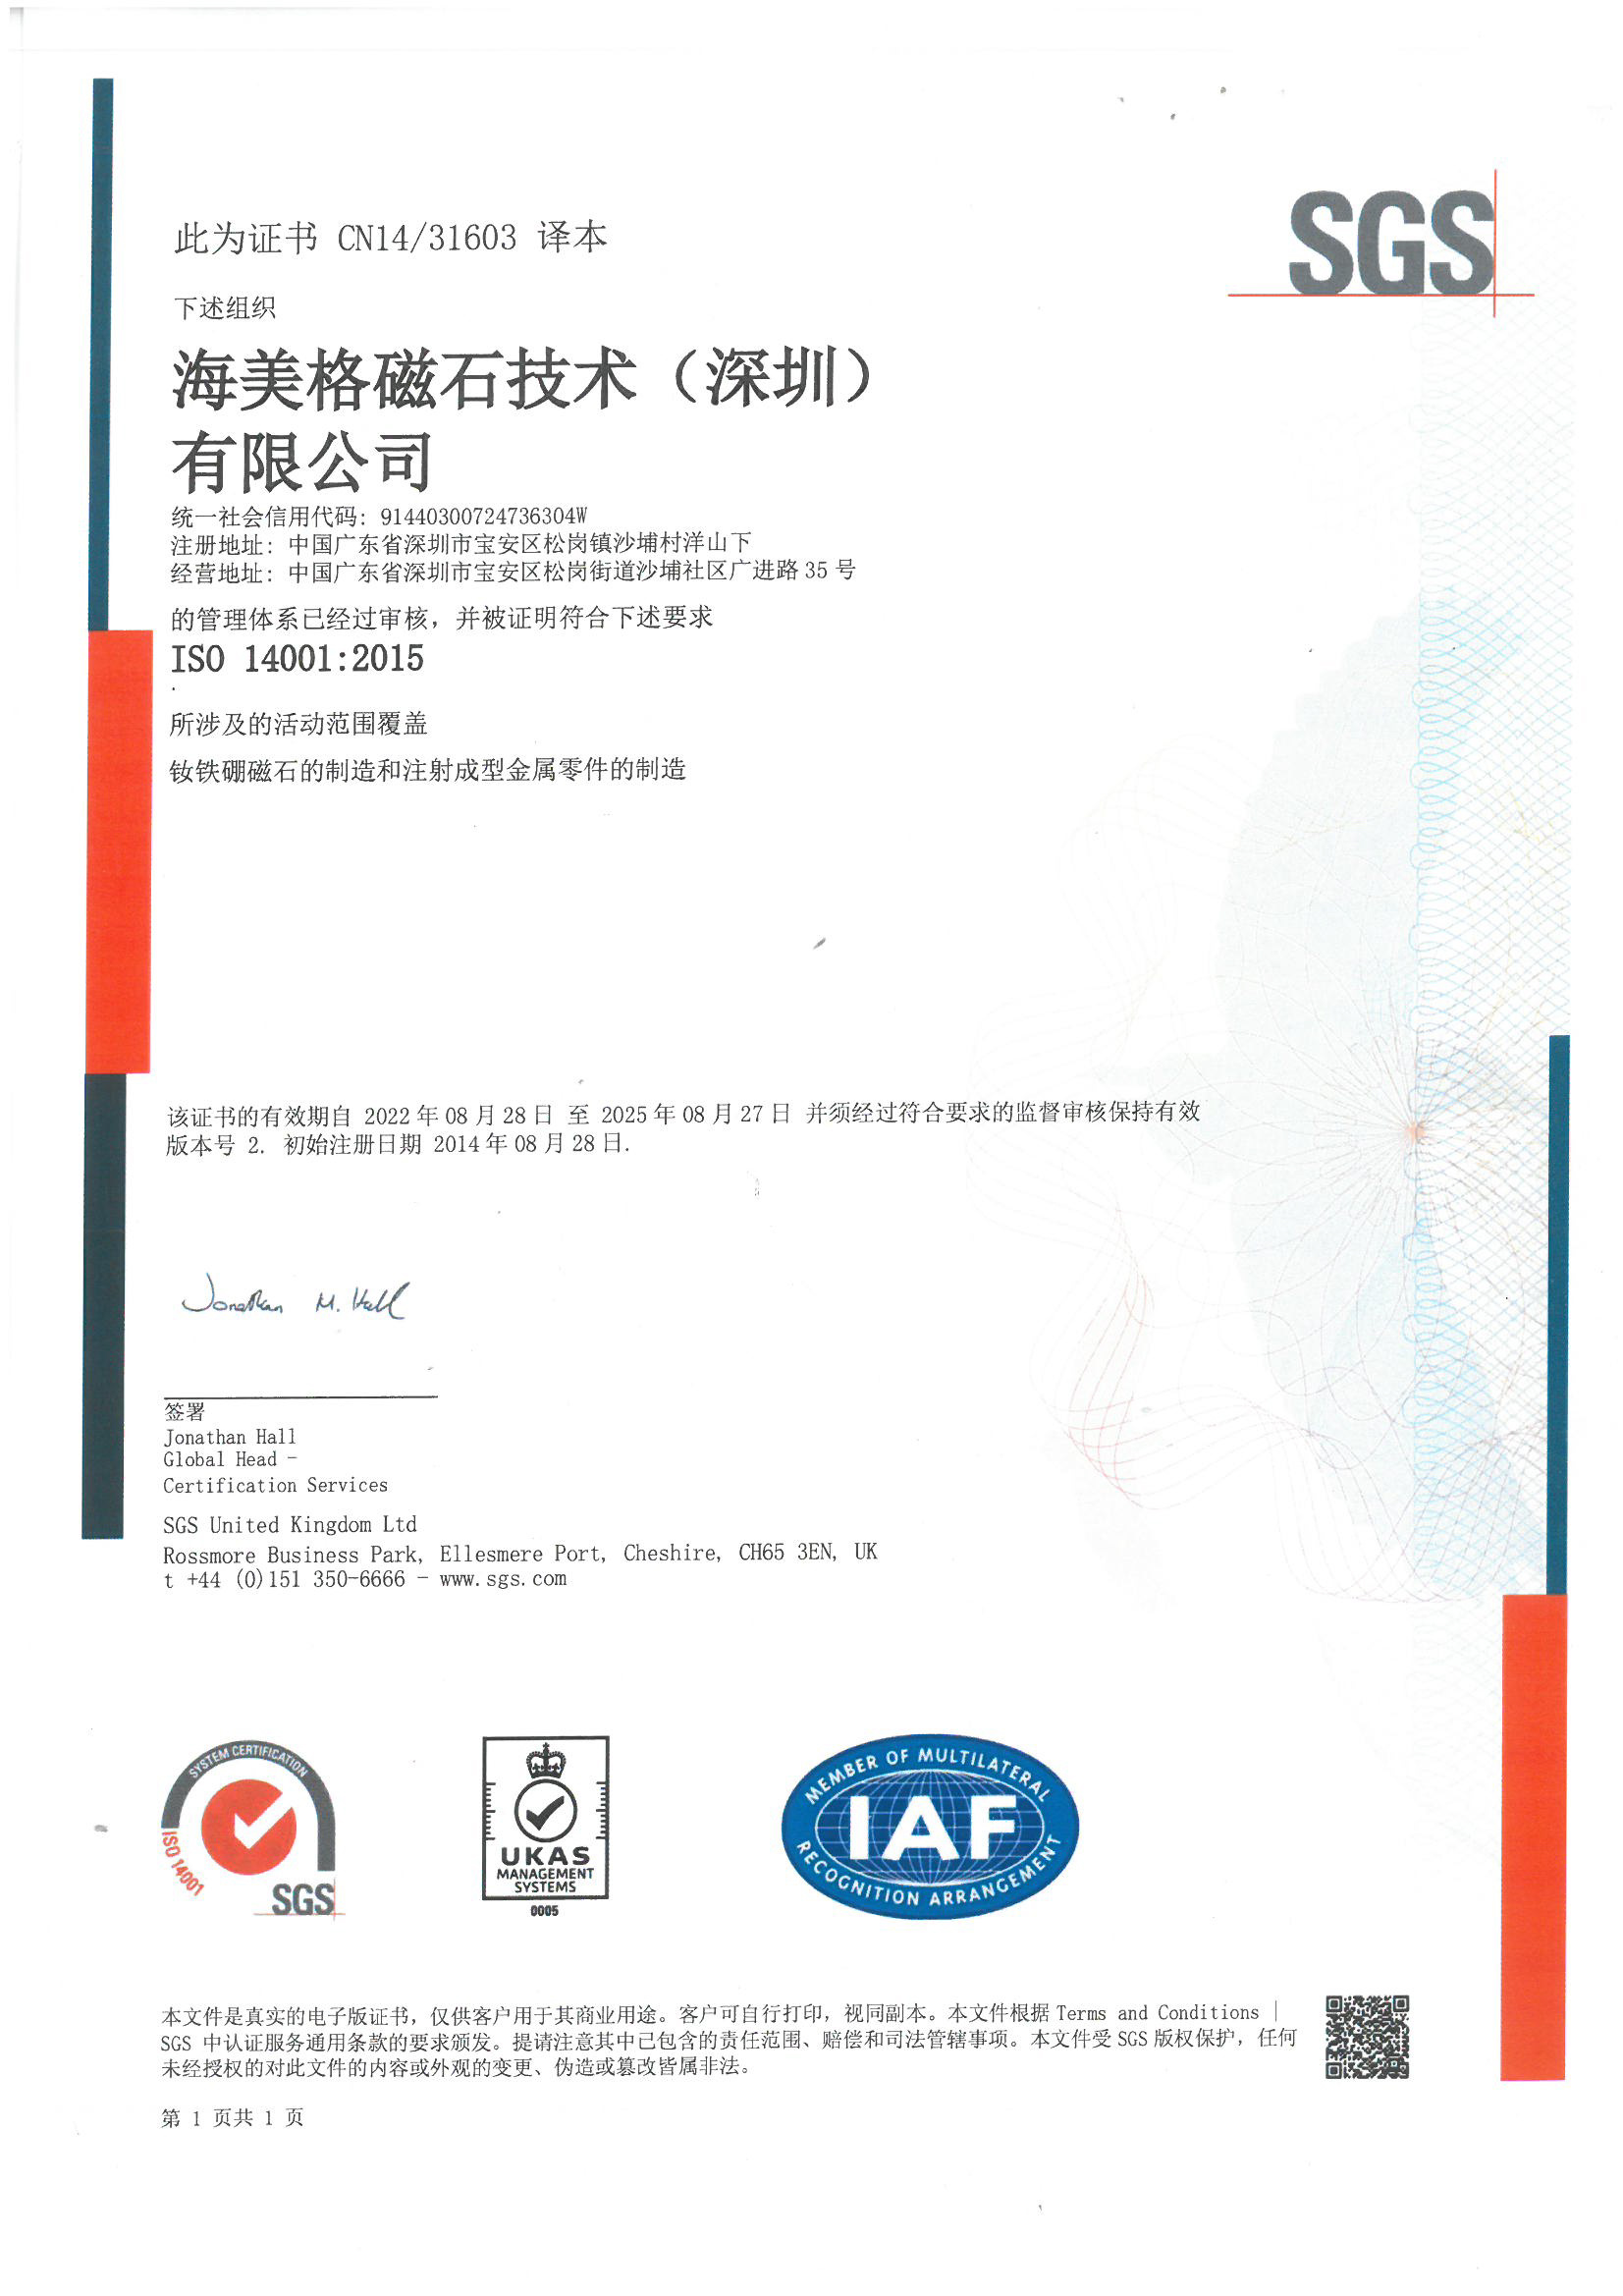 Haimag ISO 14001 2015